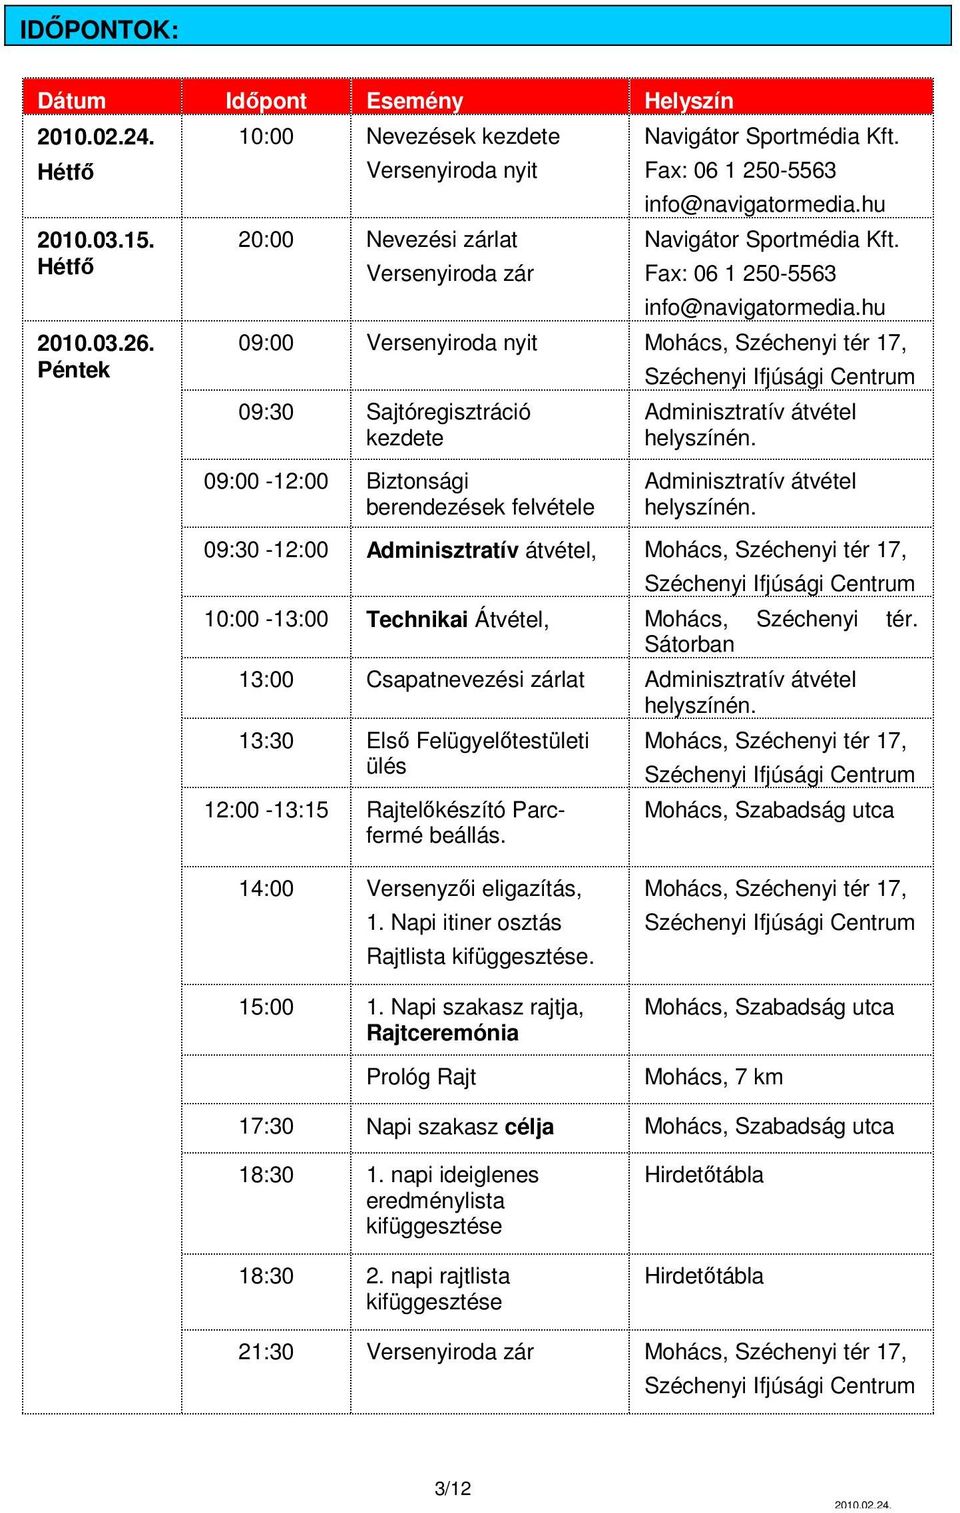 hu 09:00 Versenyiroda nyit Mohács, Széchenyi tér 17, 09:30 Sajtóregisztráció kezdete Adminisztratív átvétel helyszínén. 09:00-12:00 Biztonsági berendezések felvétele Adminisztratív átvétel helyszínén.